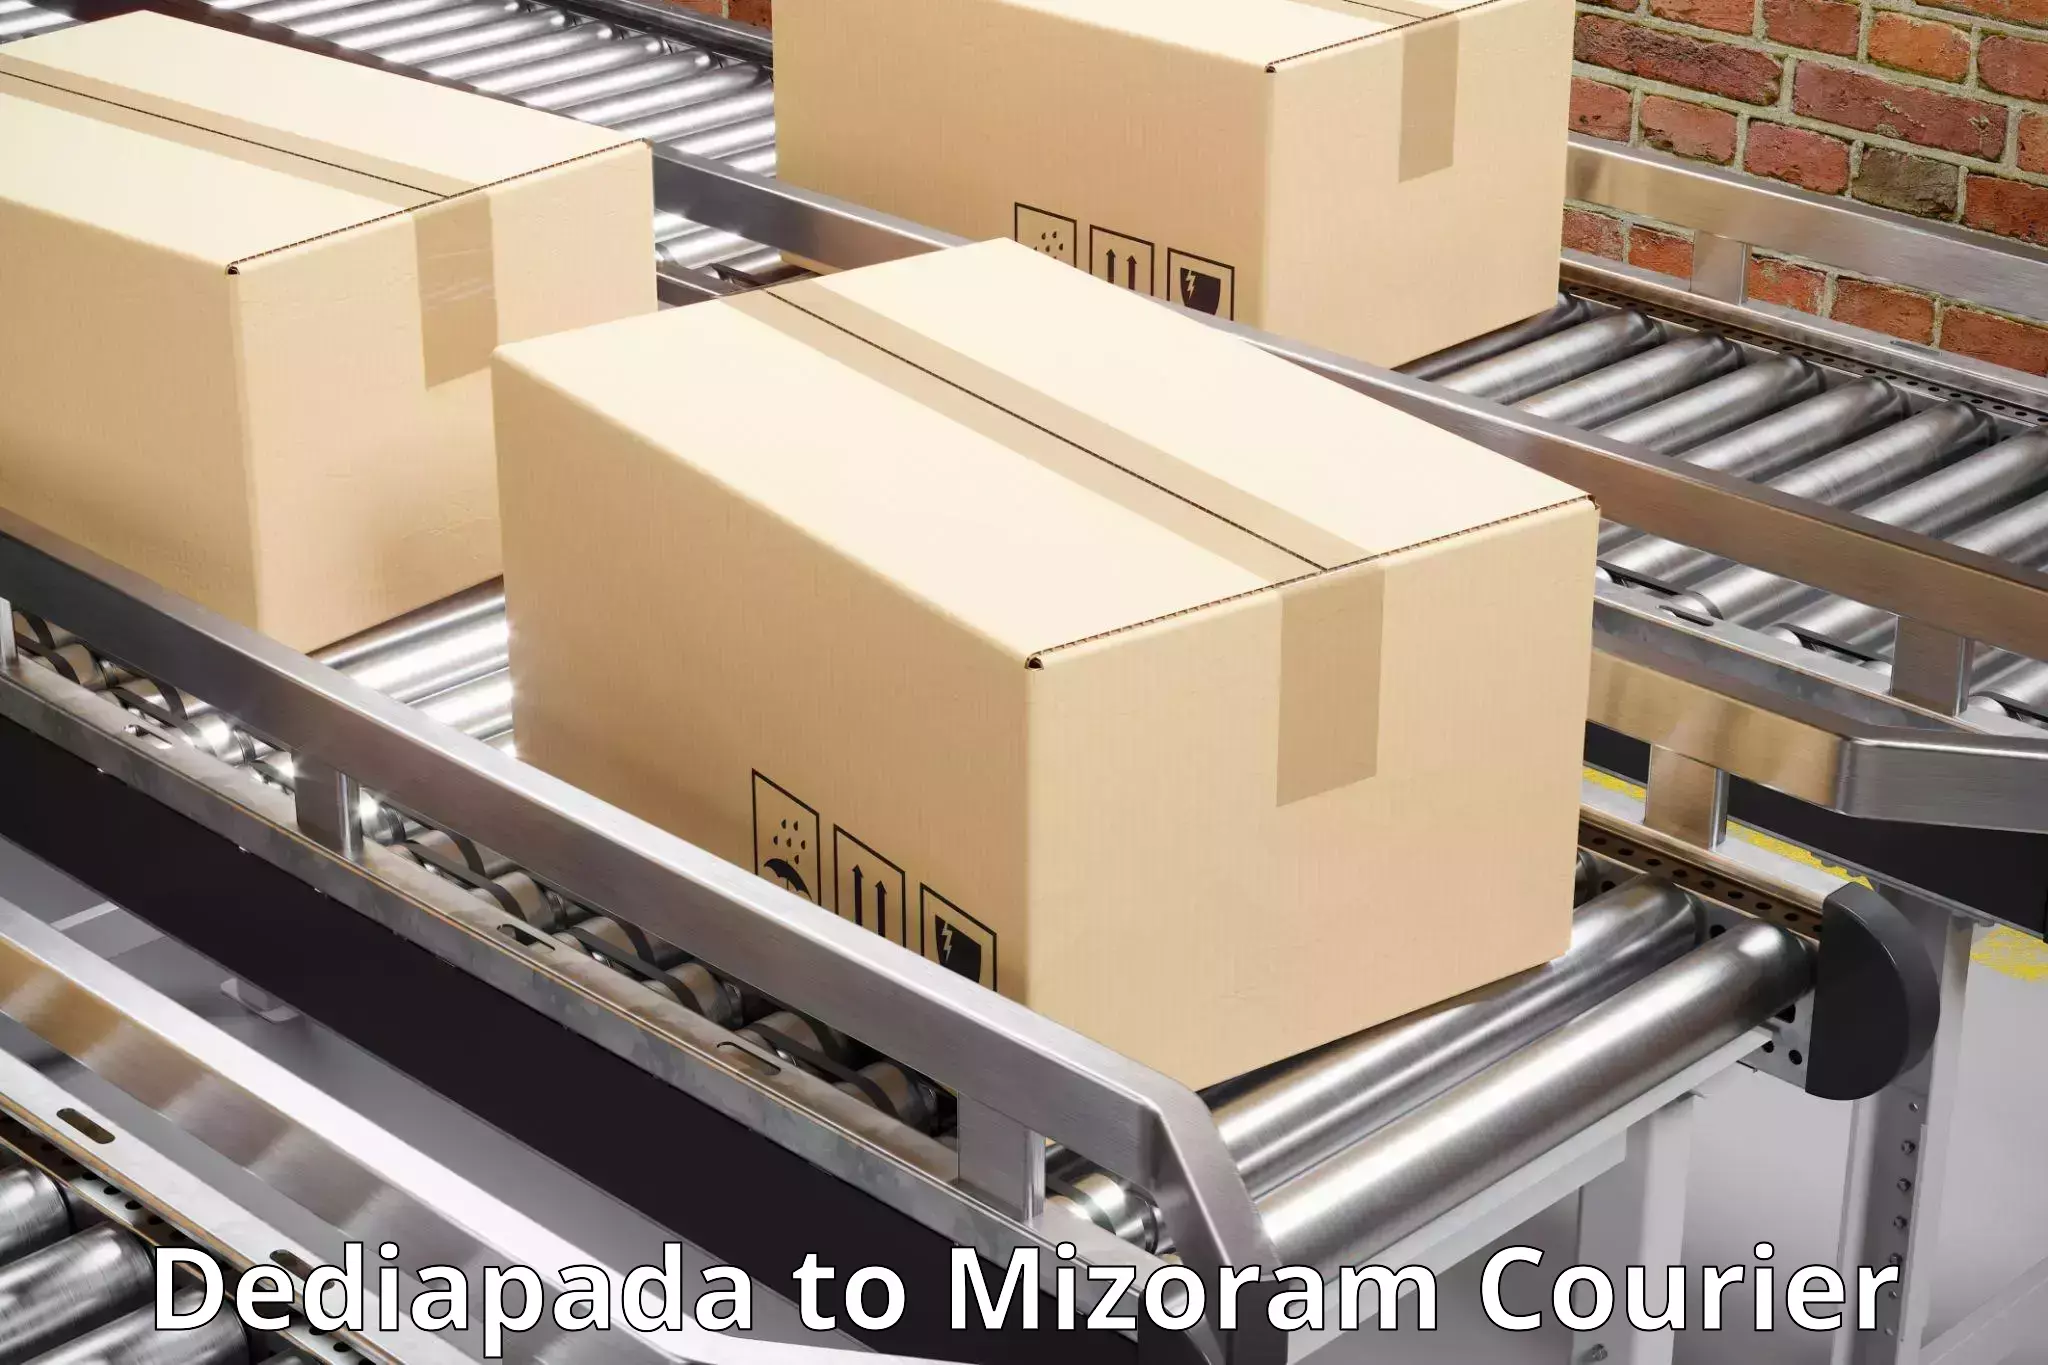 Fast delivery service in Dediapada to Mizoram